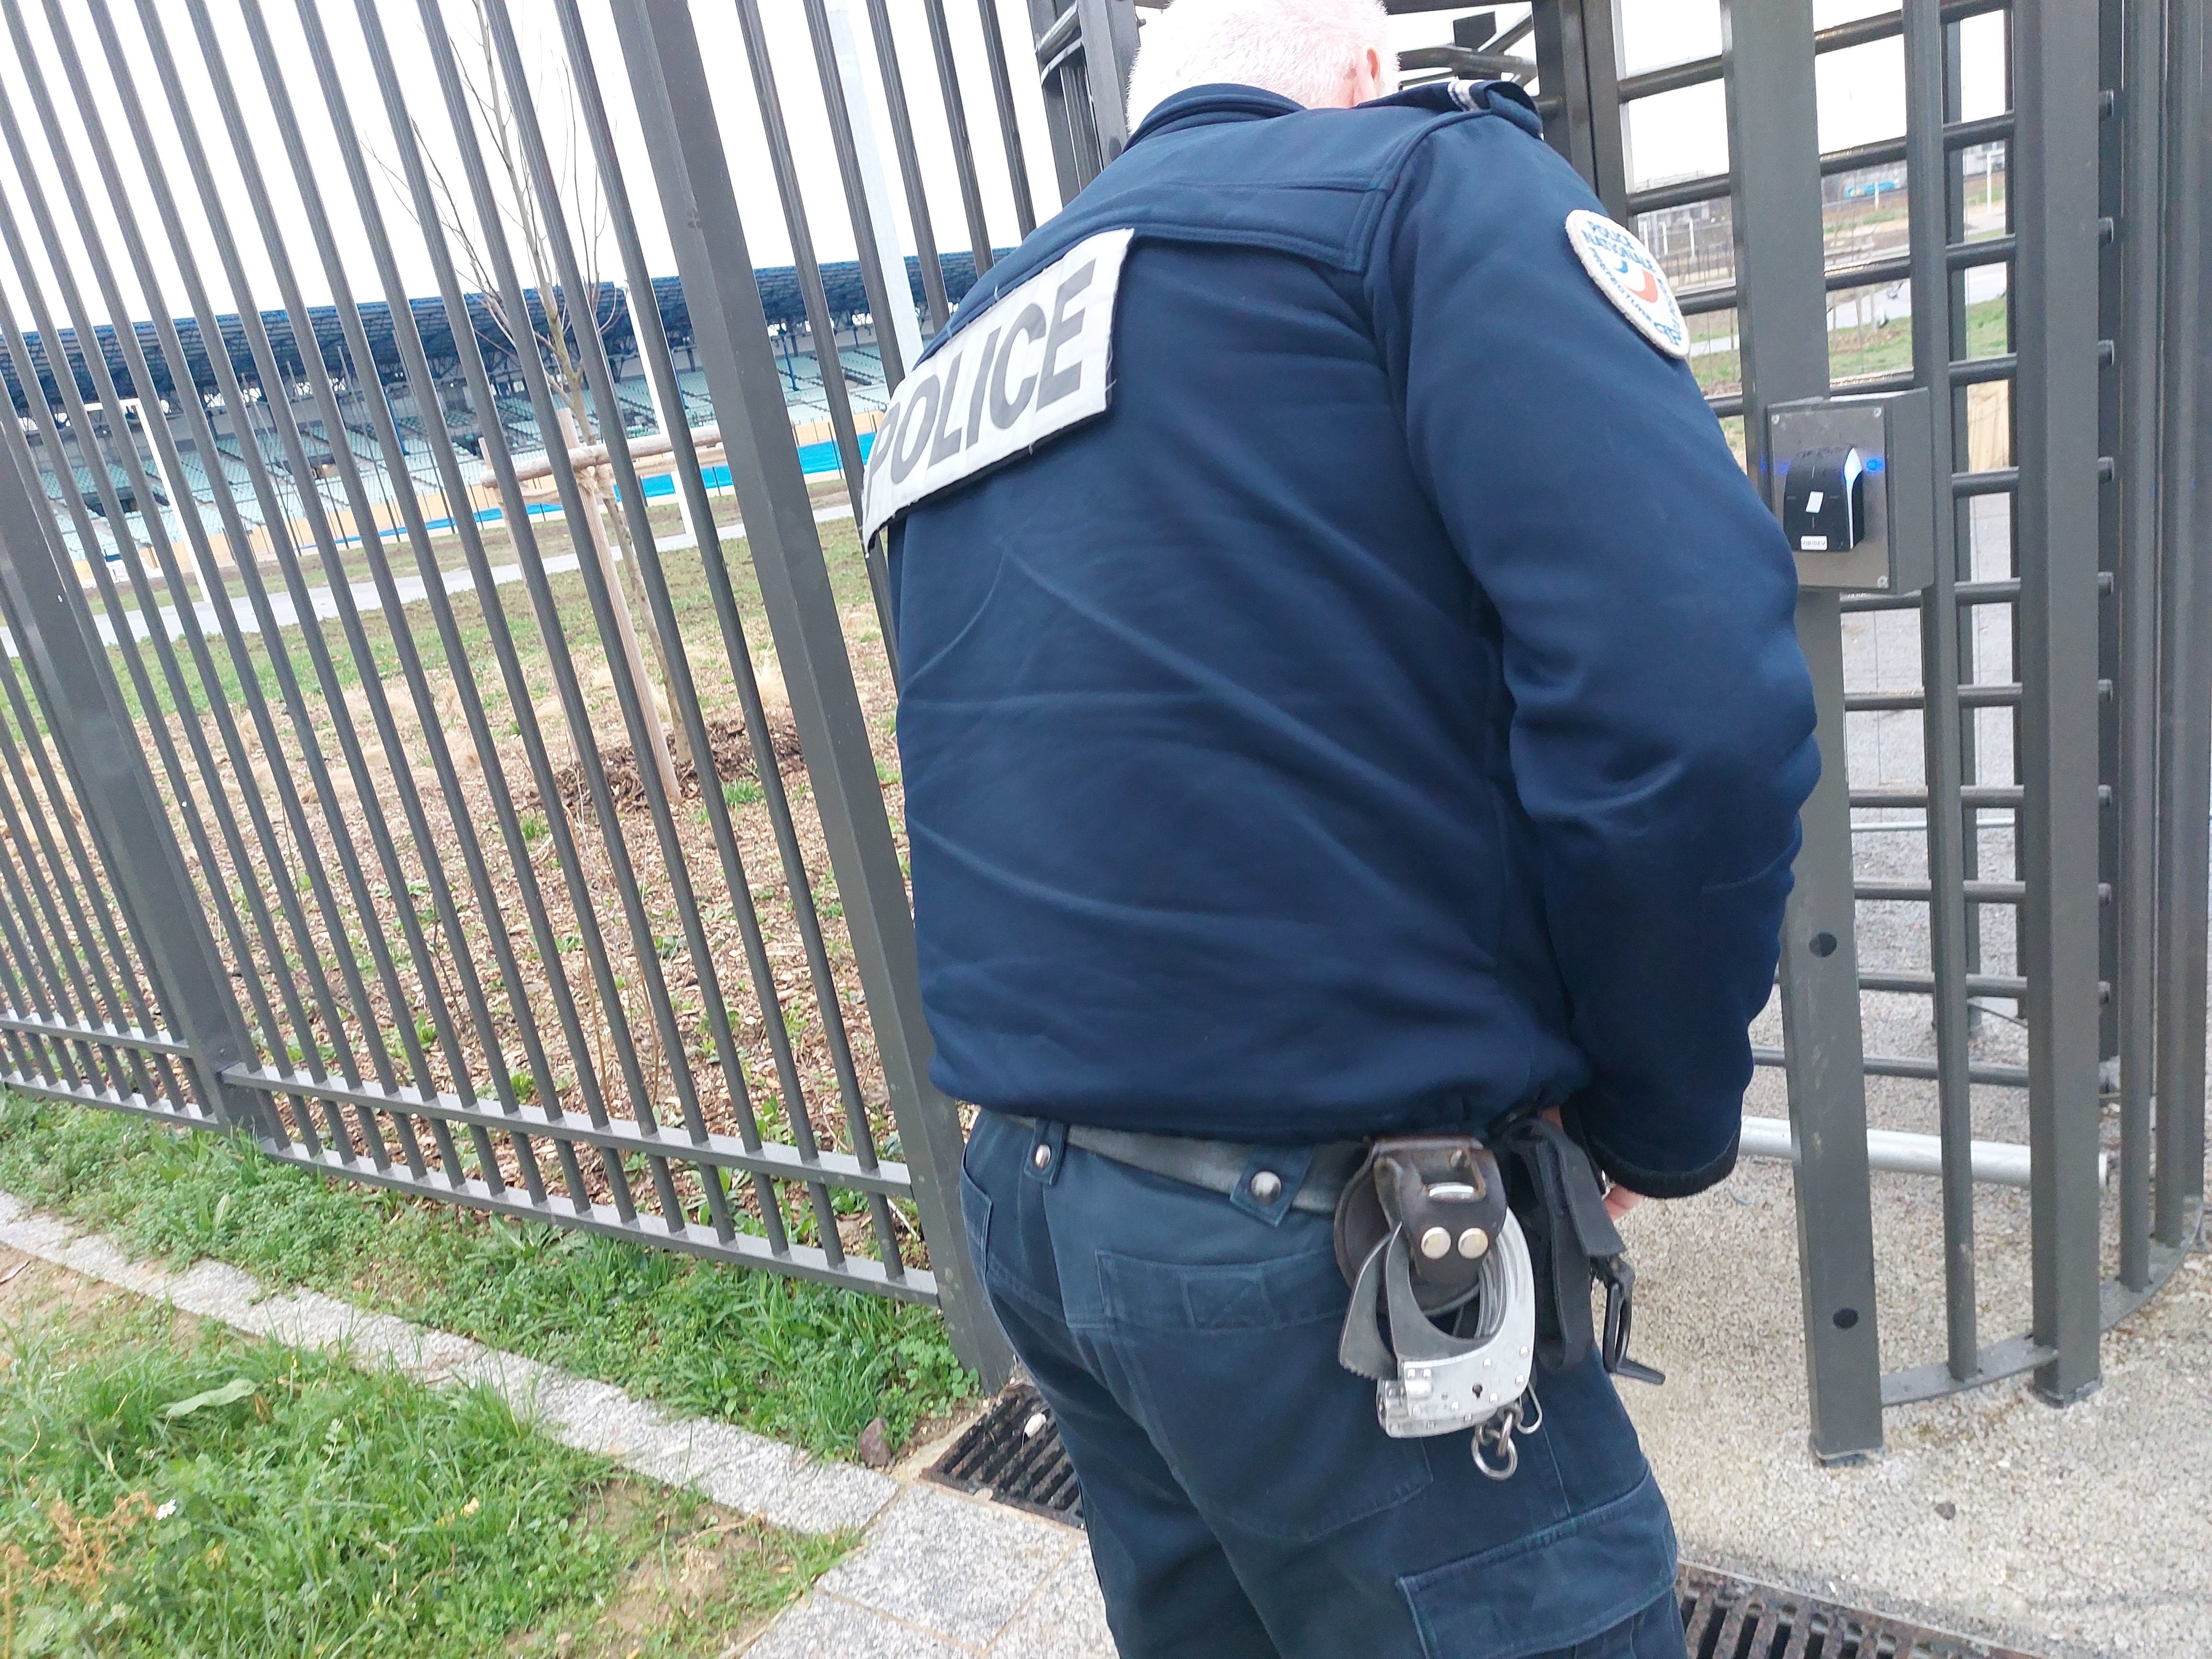 Colombes (Hauts-de-Seine), le 9 février. La patrouille de police passe par le stade Yves-du-Manoir pour vérifier qu'il n' y a pas eu d'intrusions ou de dégradations. LP/Nicolas Goinard